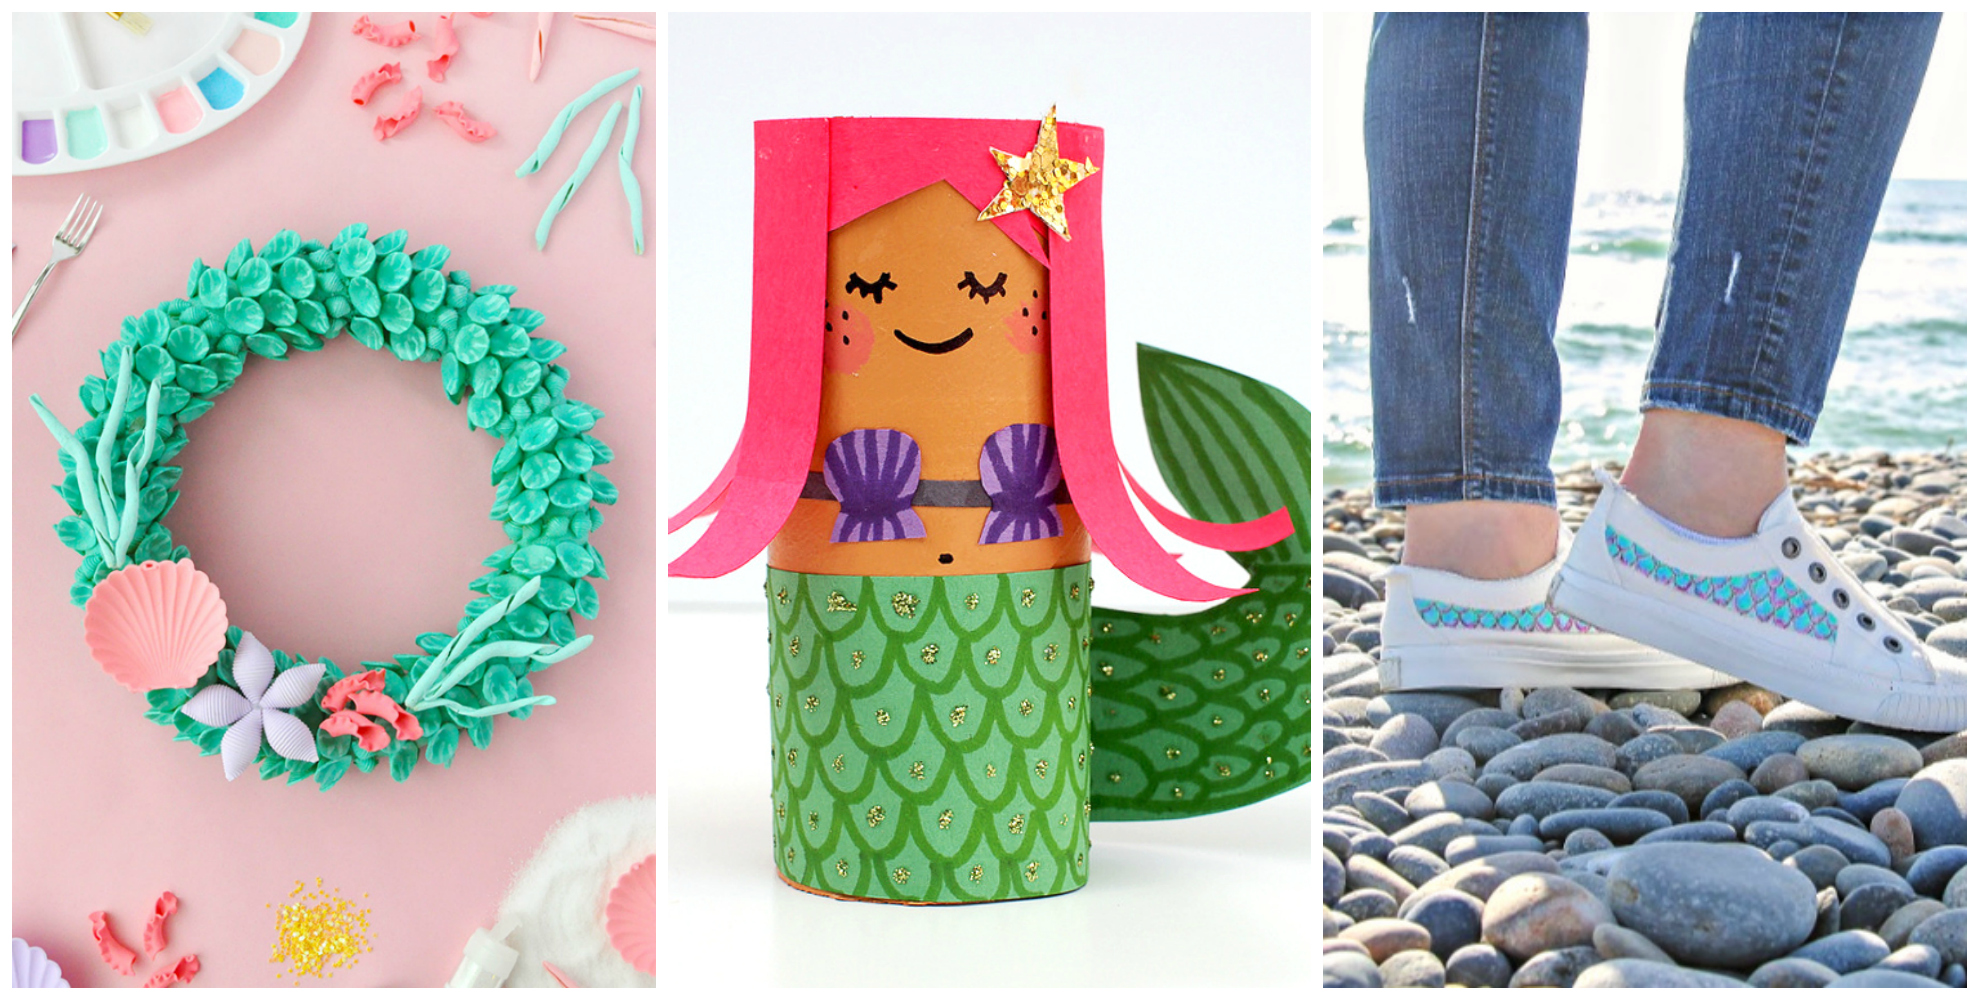 Mermaid Toilet paper roll craft : An easy Mermaid craft